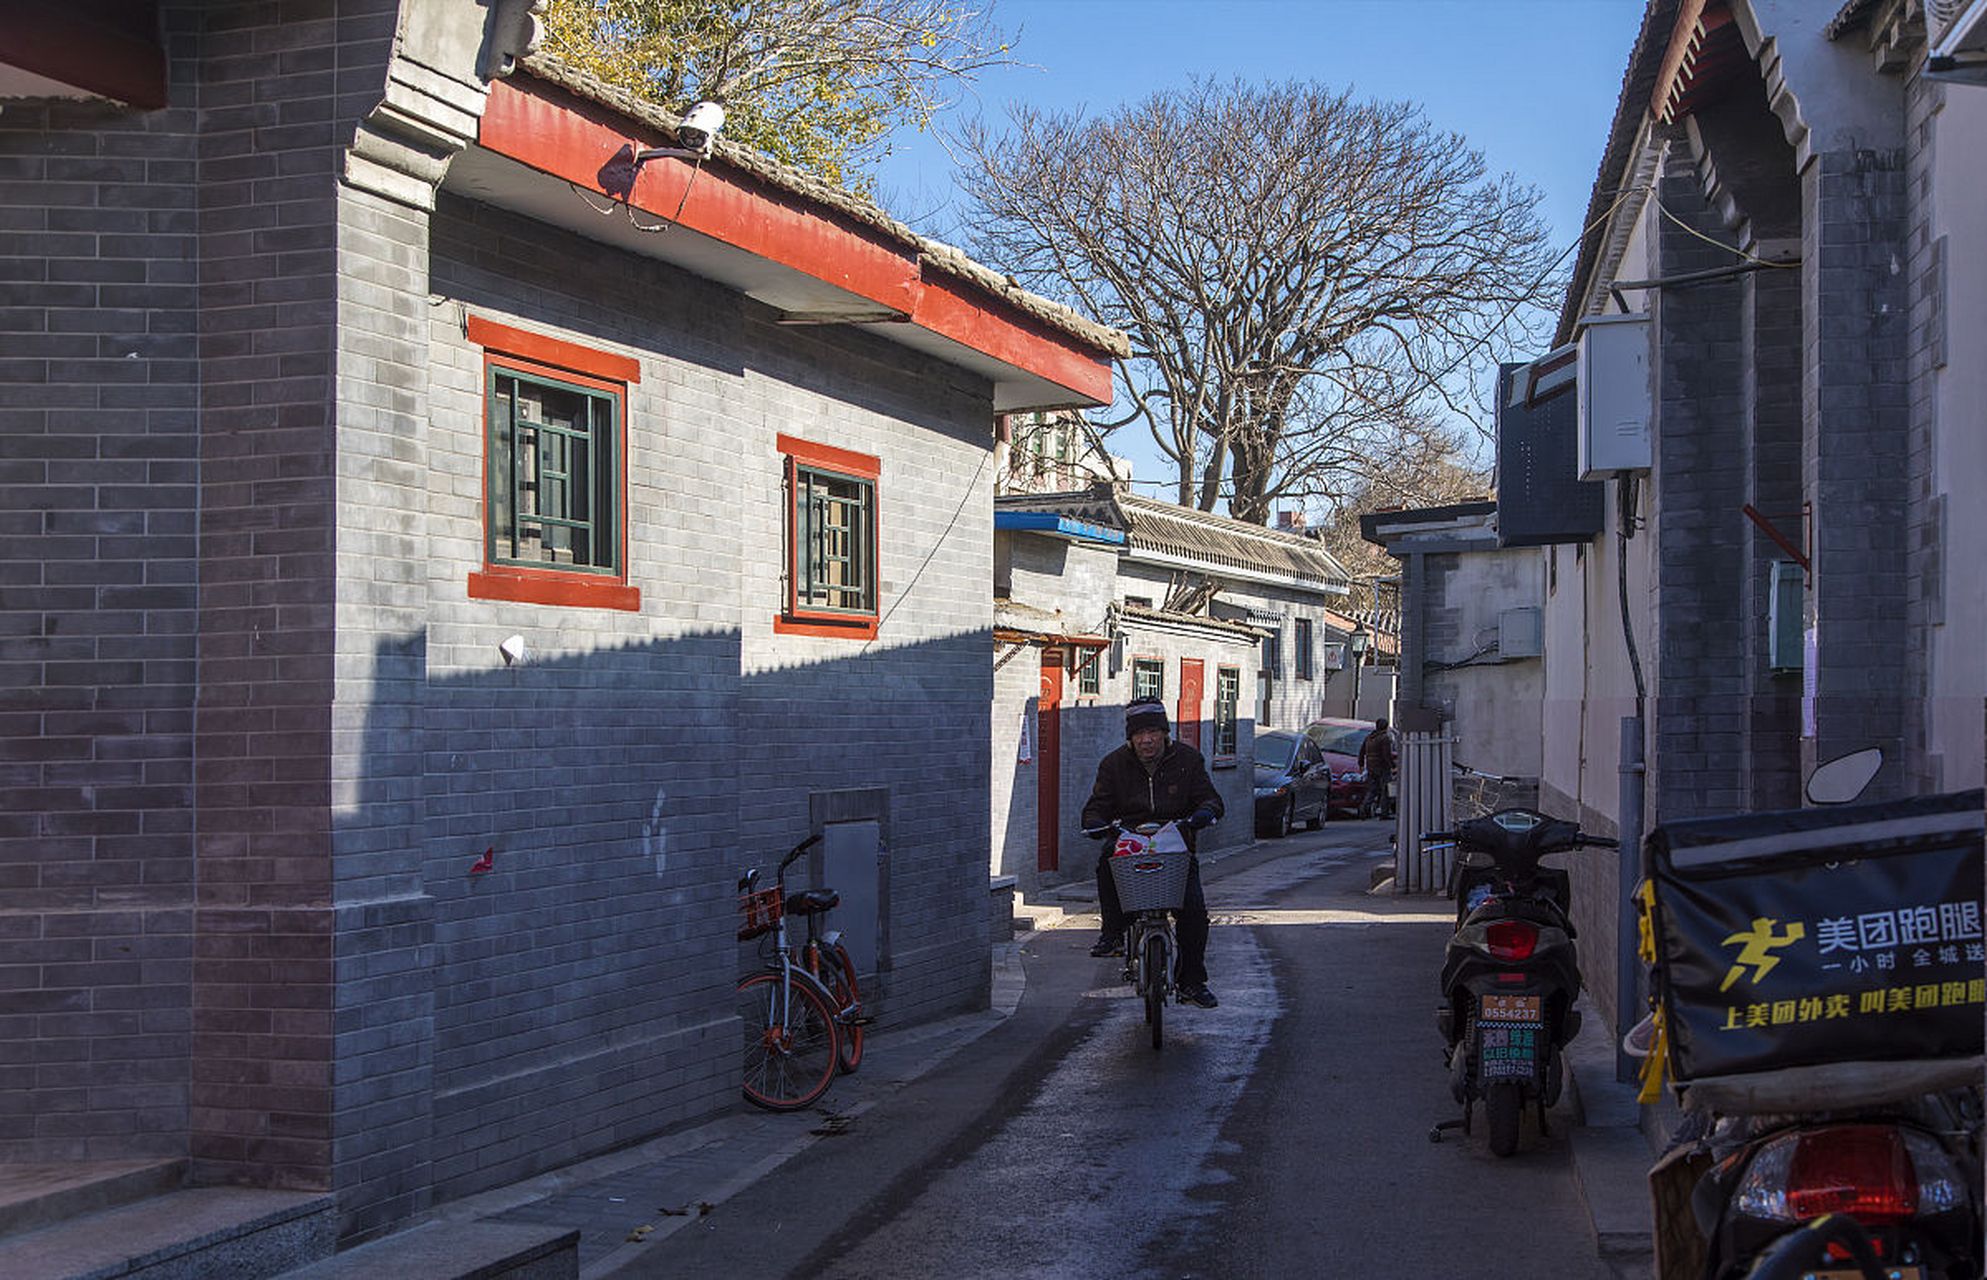 南锣鼓巷:位于北京市东城区,是北京最古老的街区之一,也是北京的胡同